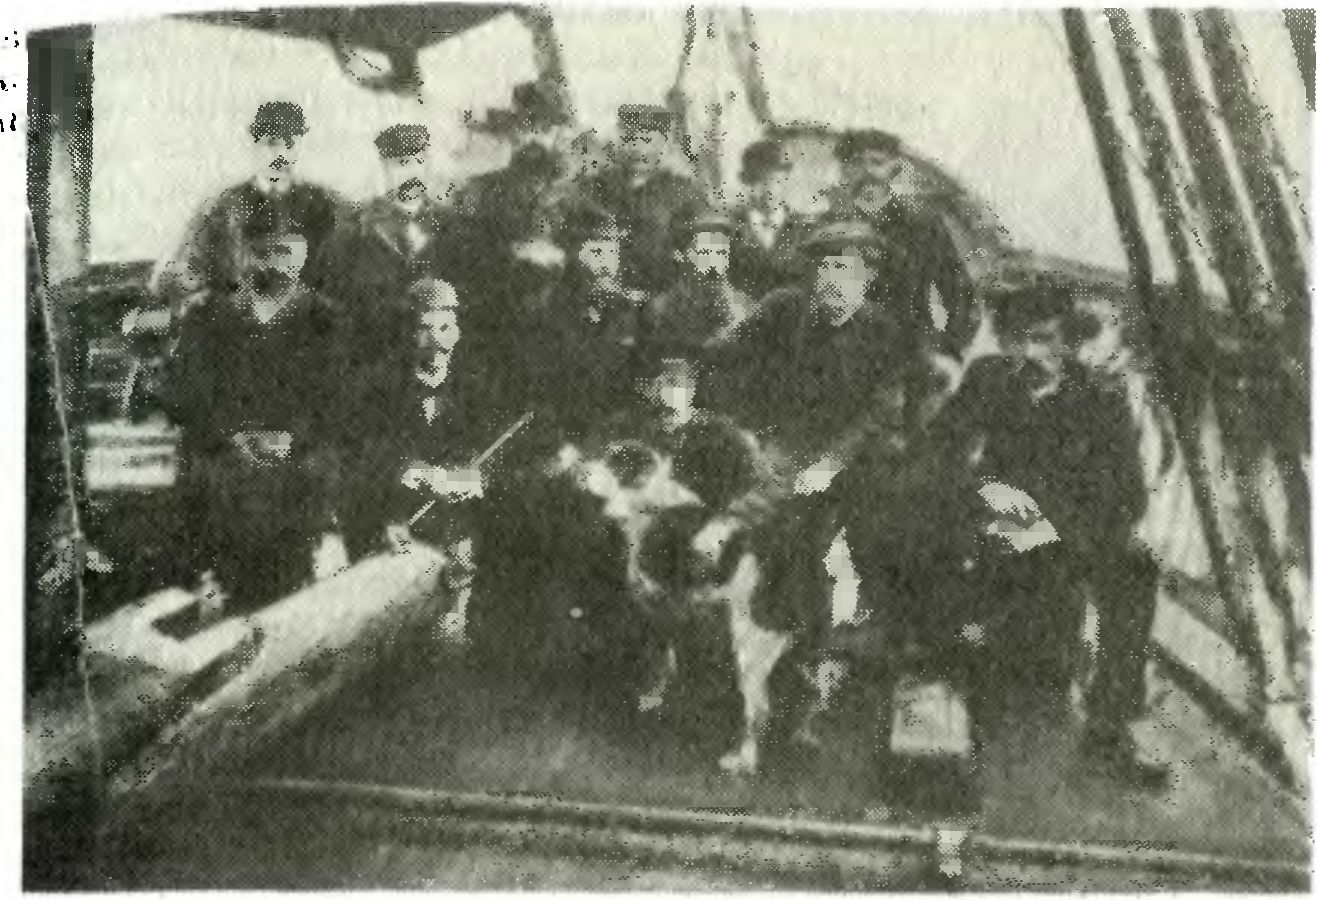 Участники первой экспедиции на «Фраме» с 1893 по 1896 г. Стоят в заднем ряду (слева направо): Блессинг, Нурдаль, Мугста, Хенриксен, Петтерсон, Иохансен. Сидят в среднем ряду (слева направо): Бентсен, Скотт-Хансен, Свердруп, Якобсен, Нансен и Юлл. Впереди посередине (с собакой) Амунсен